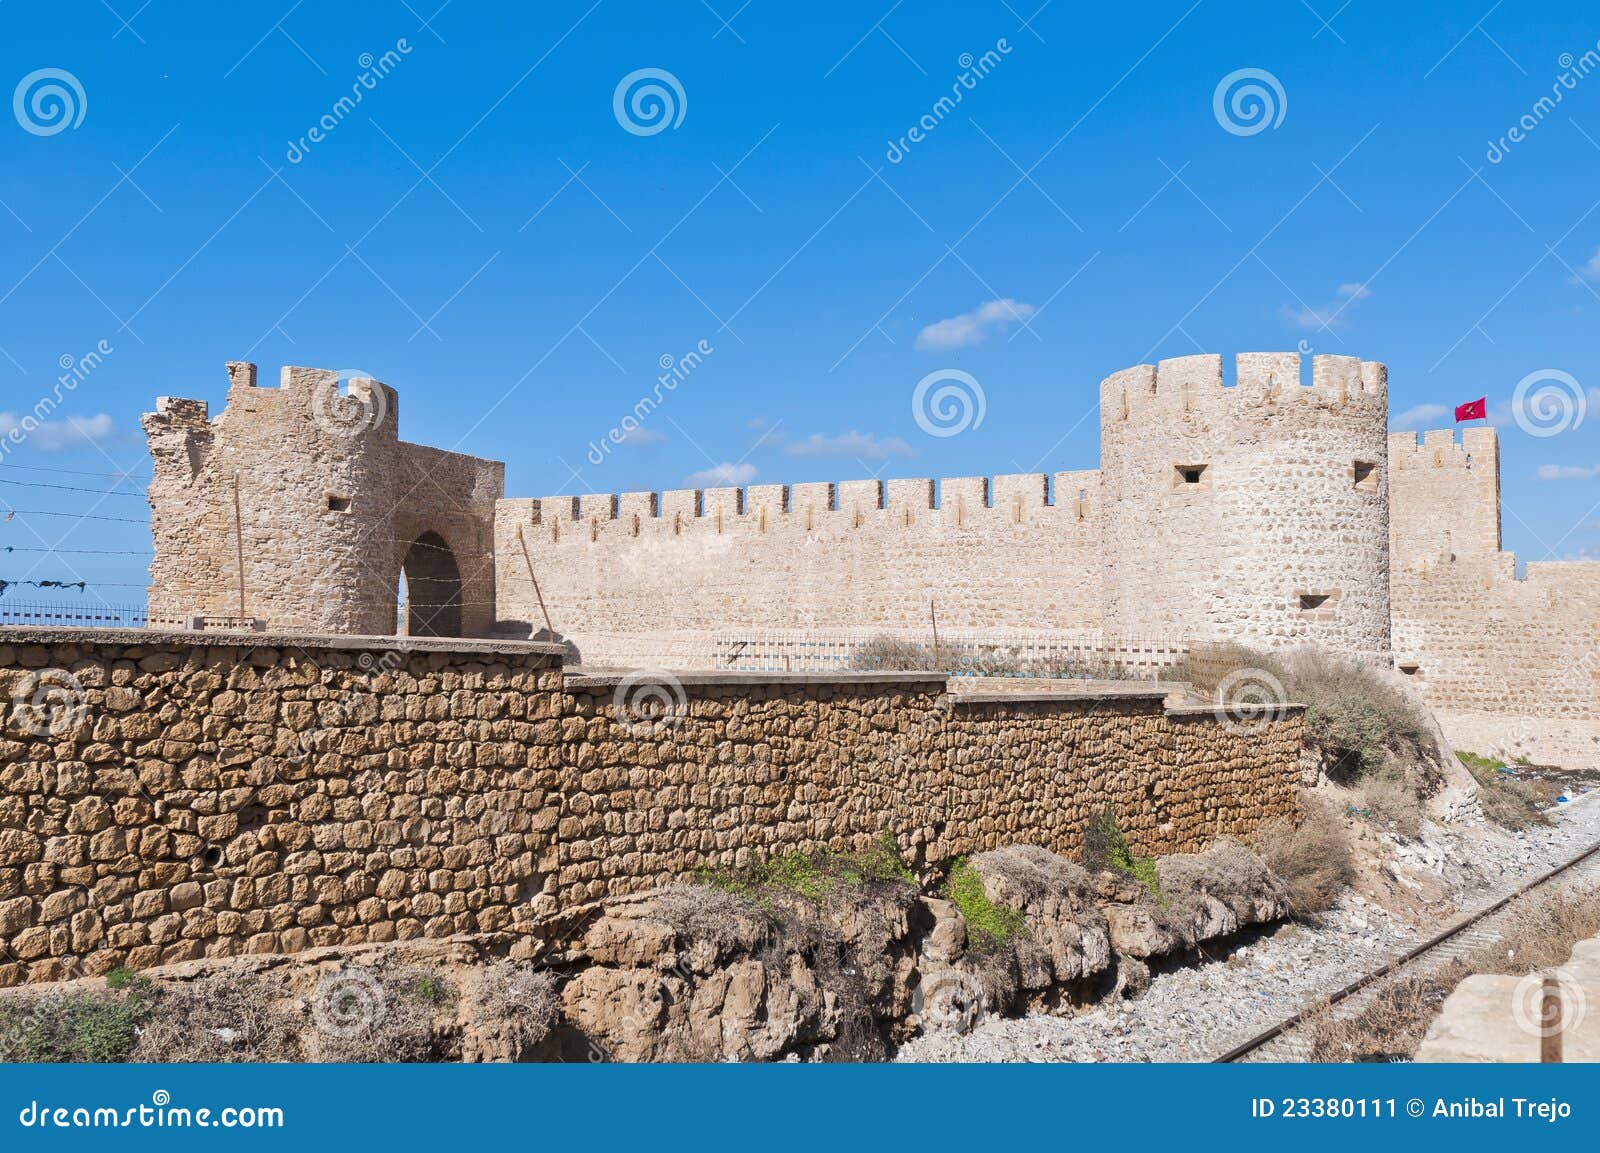 dar-el-bahar fortress at safi, morocco